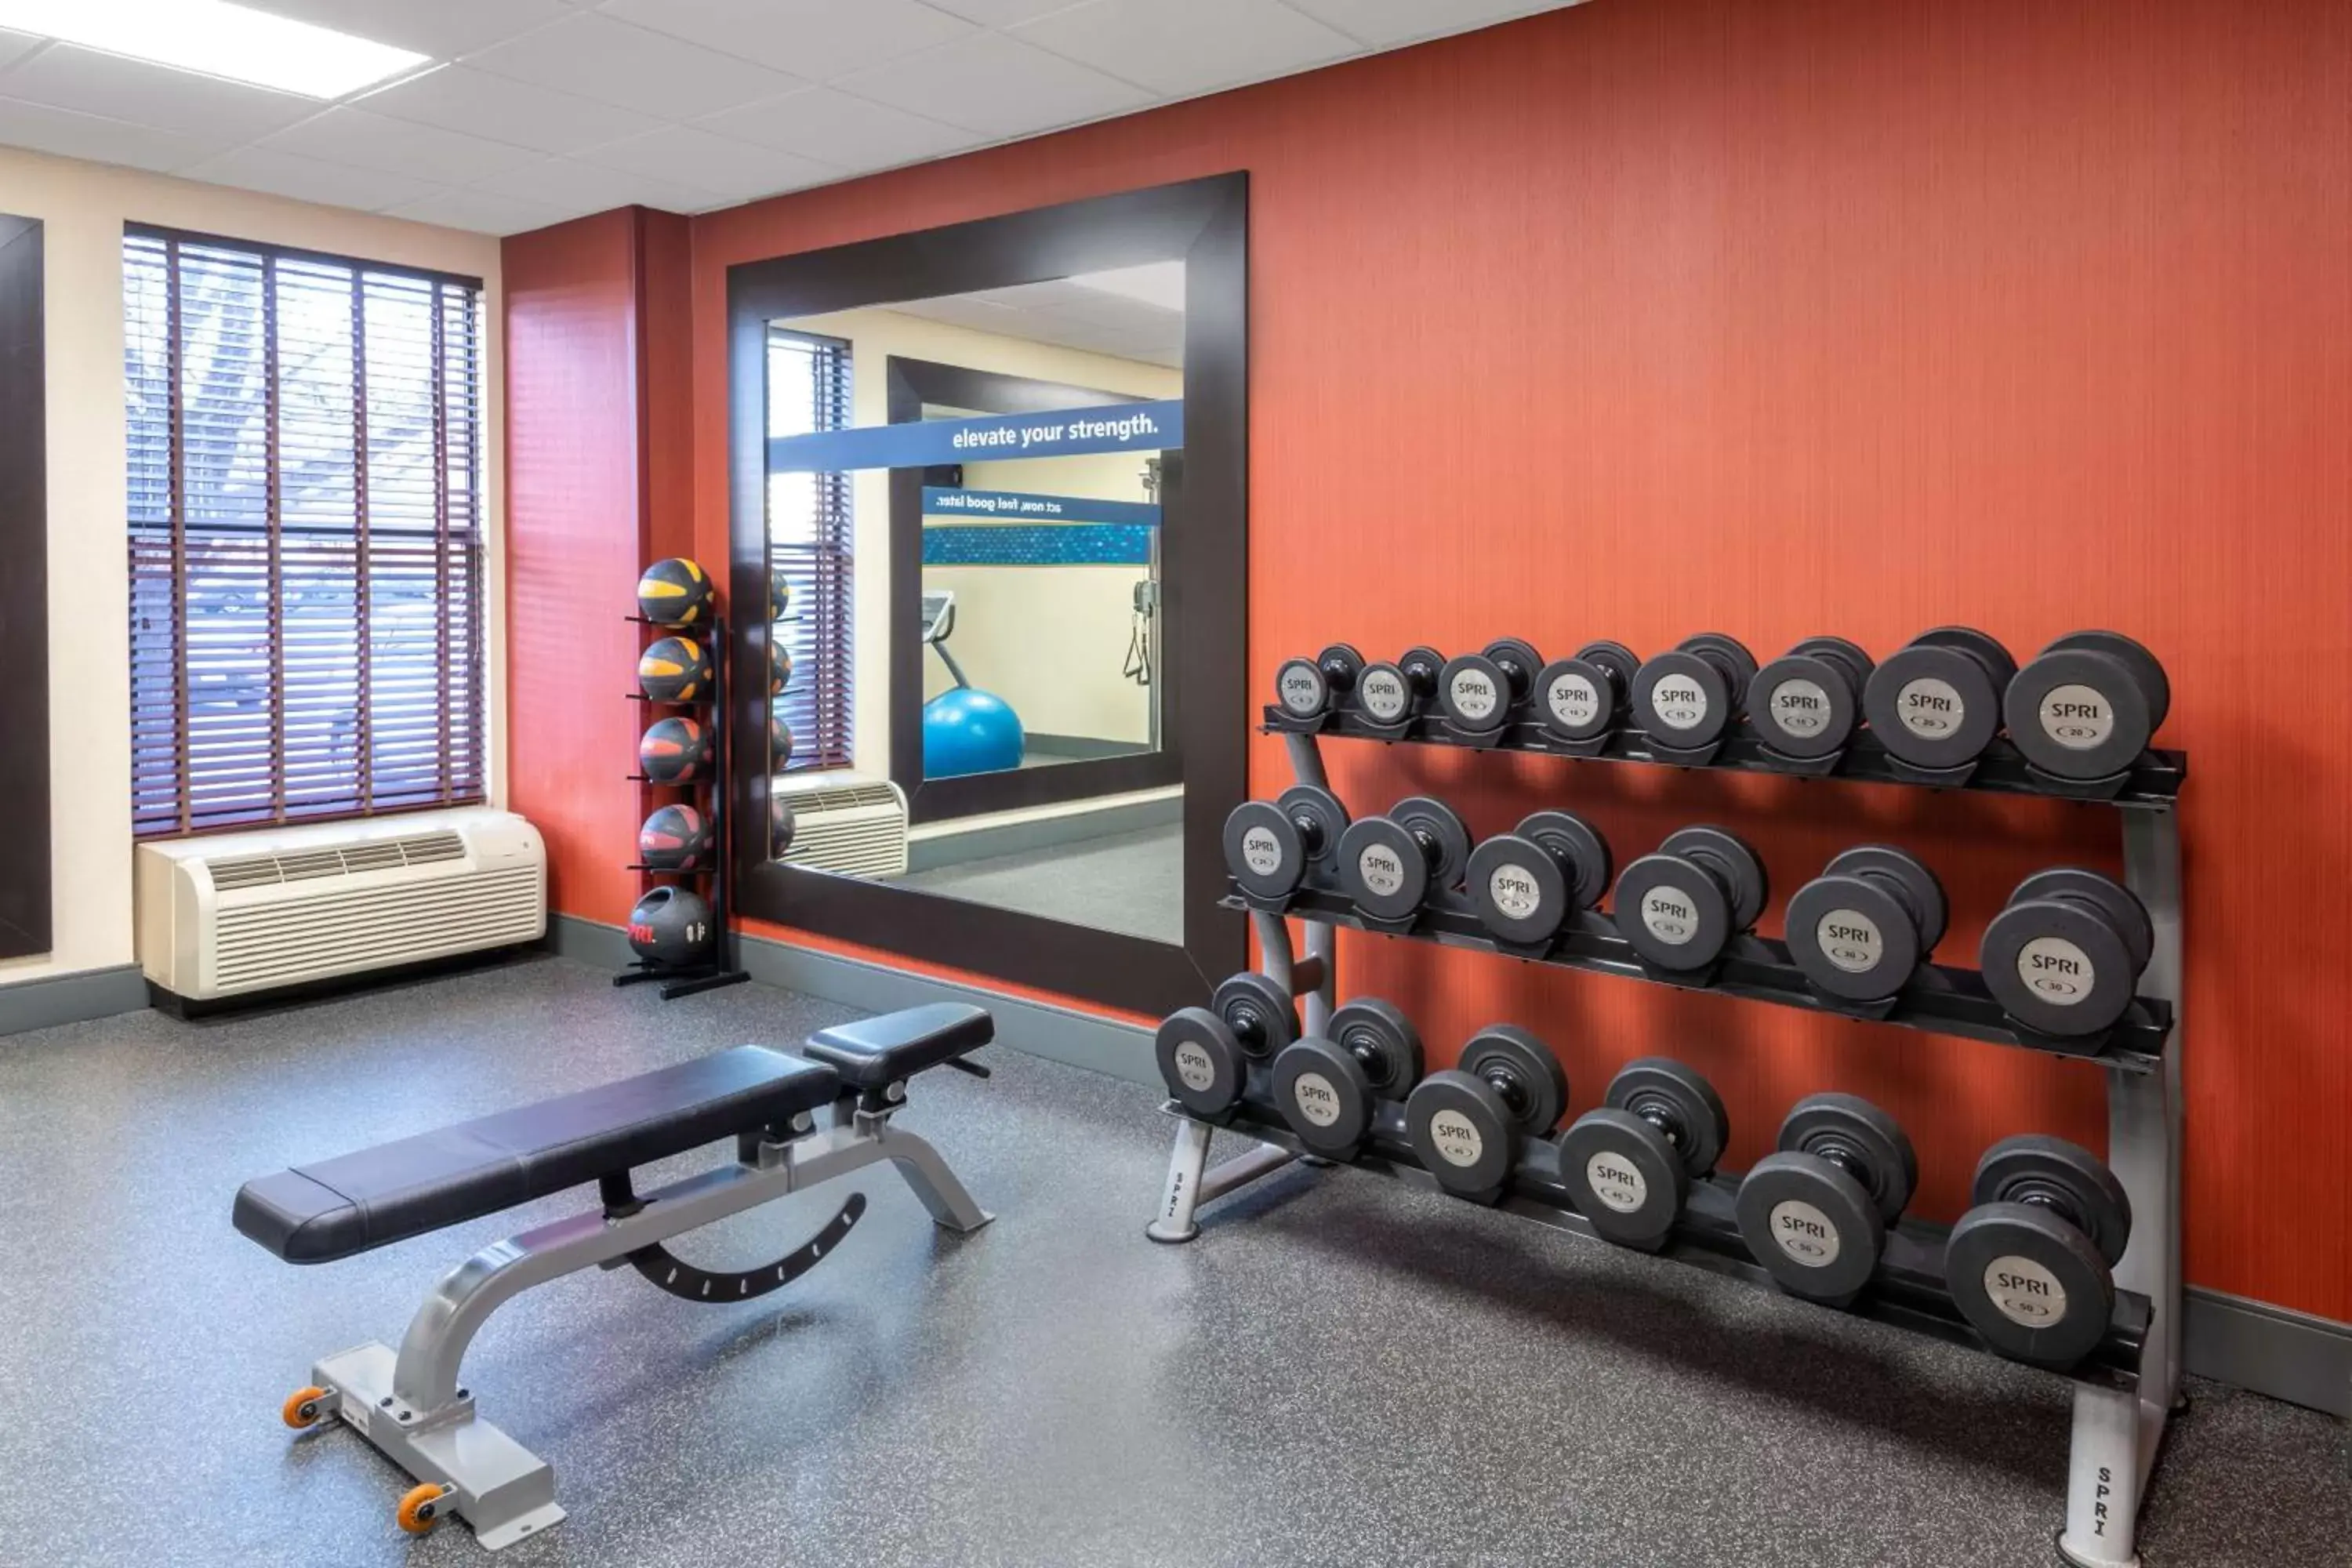 Fitness centre/facilities, Fitness Center/Facilities in Hampton Inn Denver-International Airport